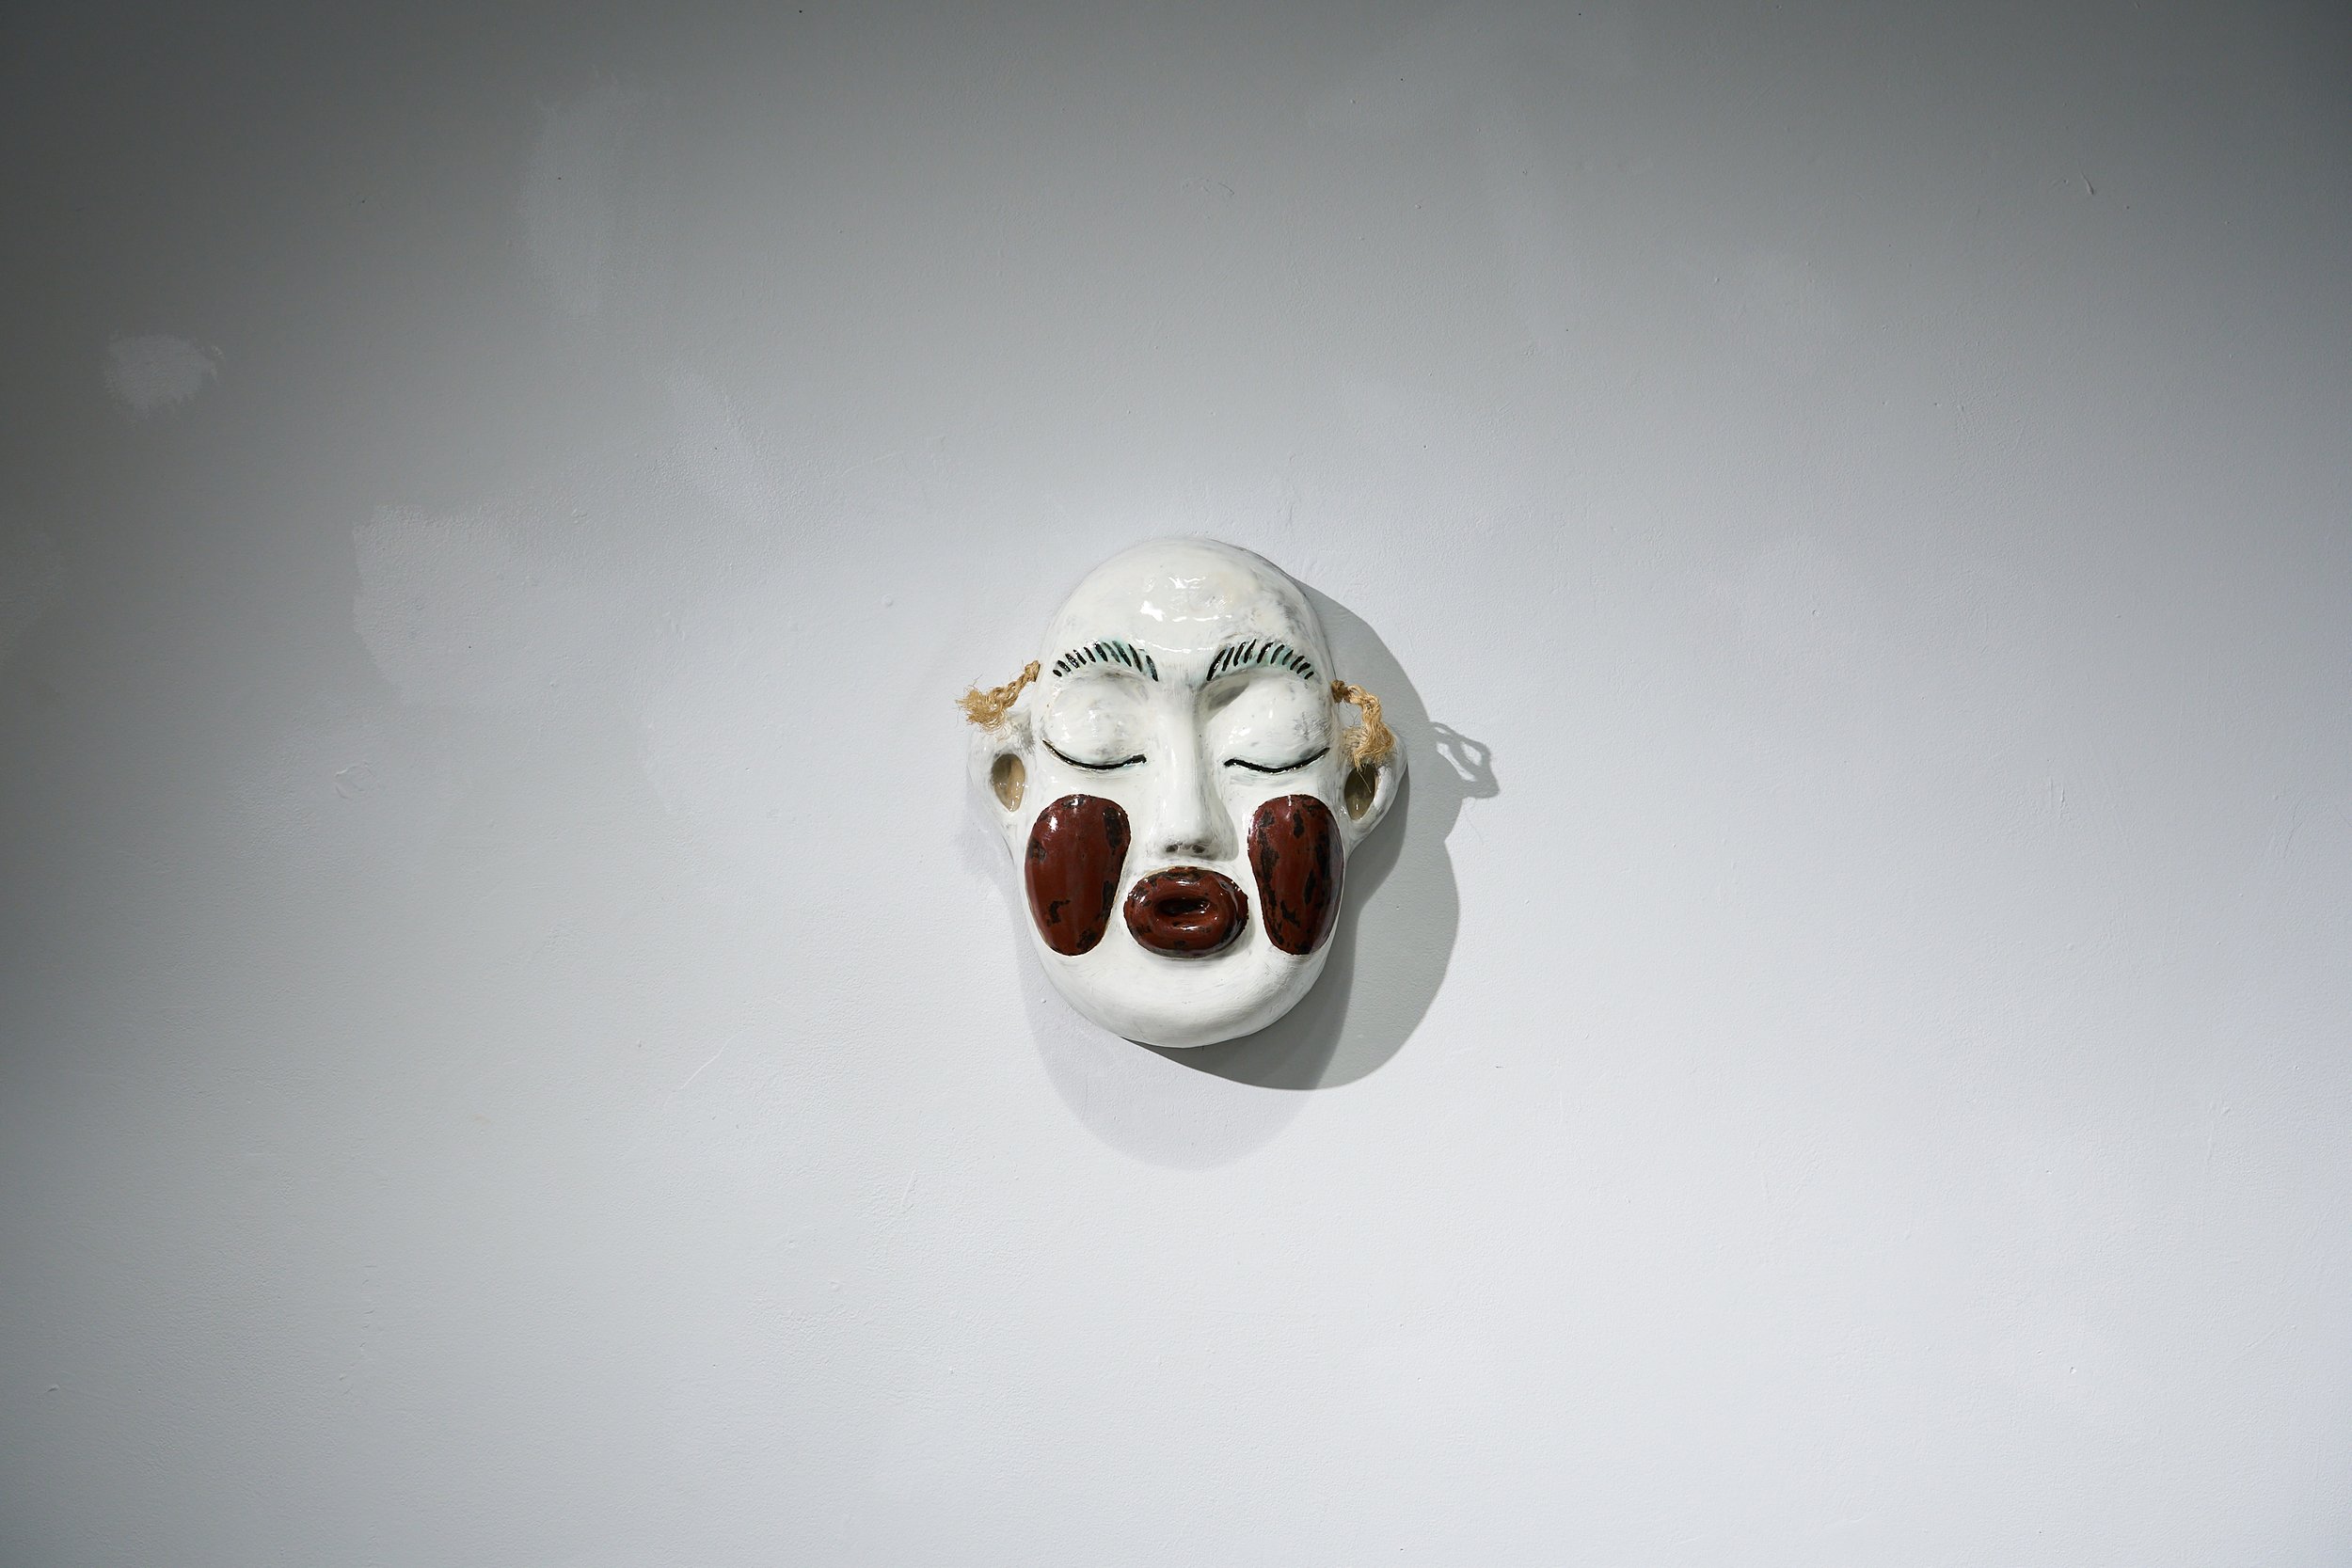 Idiot Mask #1, 2022, ceramic and rope, 25 x 30 x 10 cm.